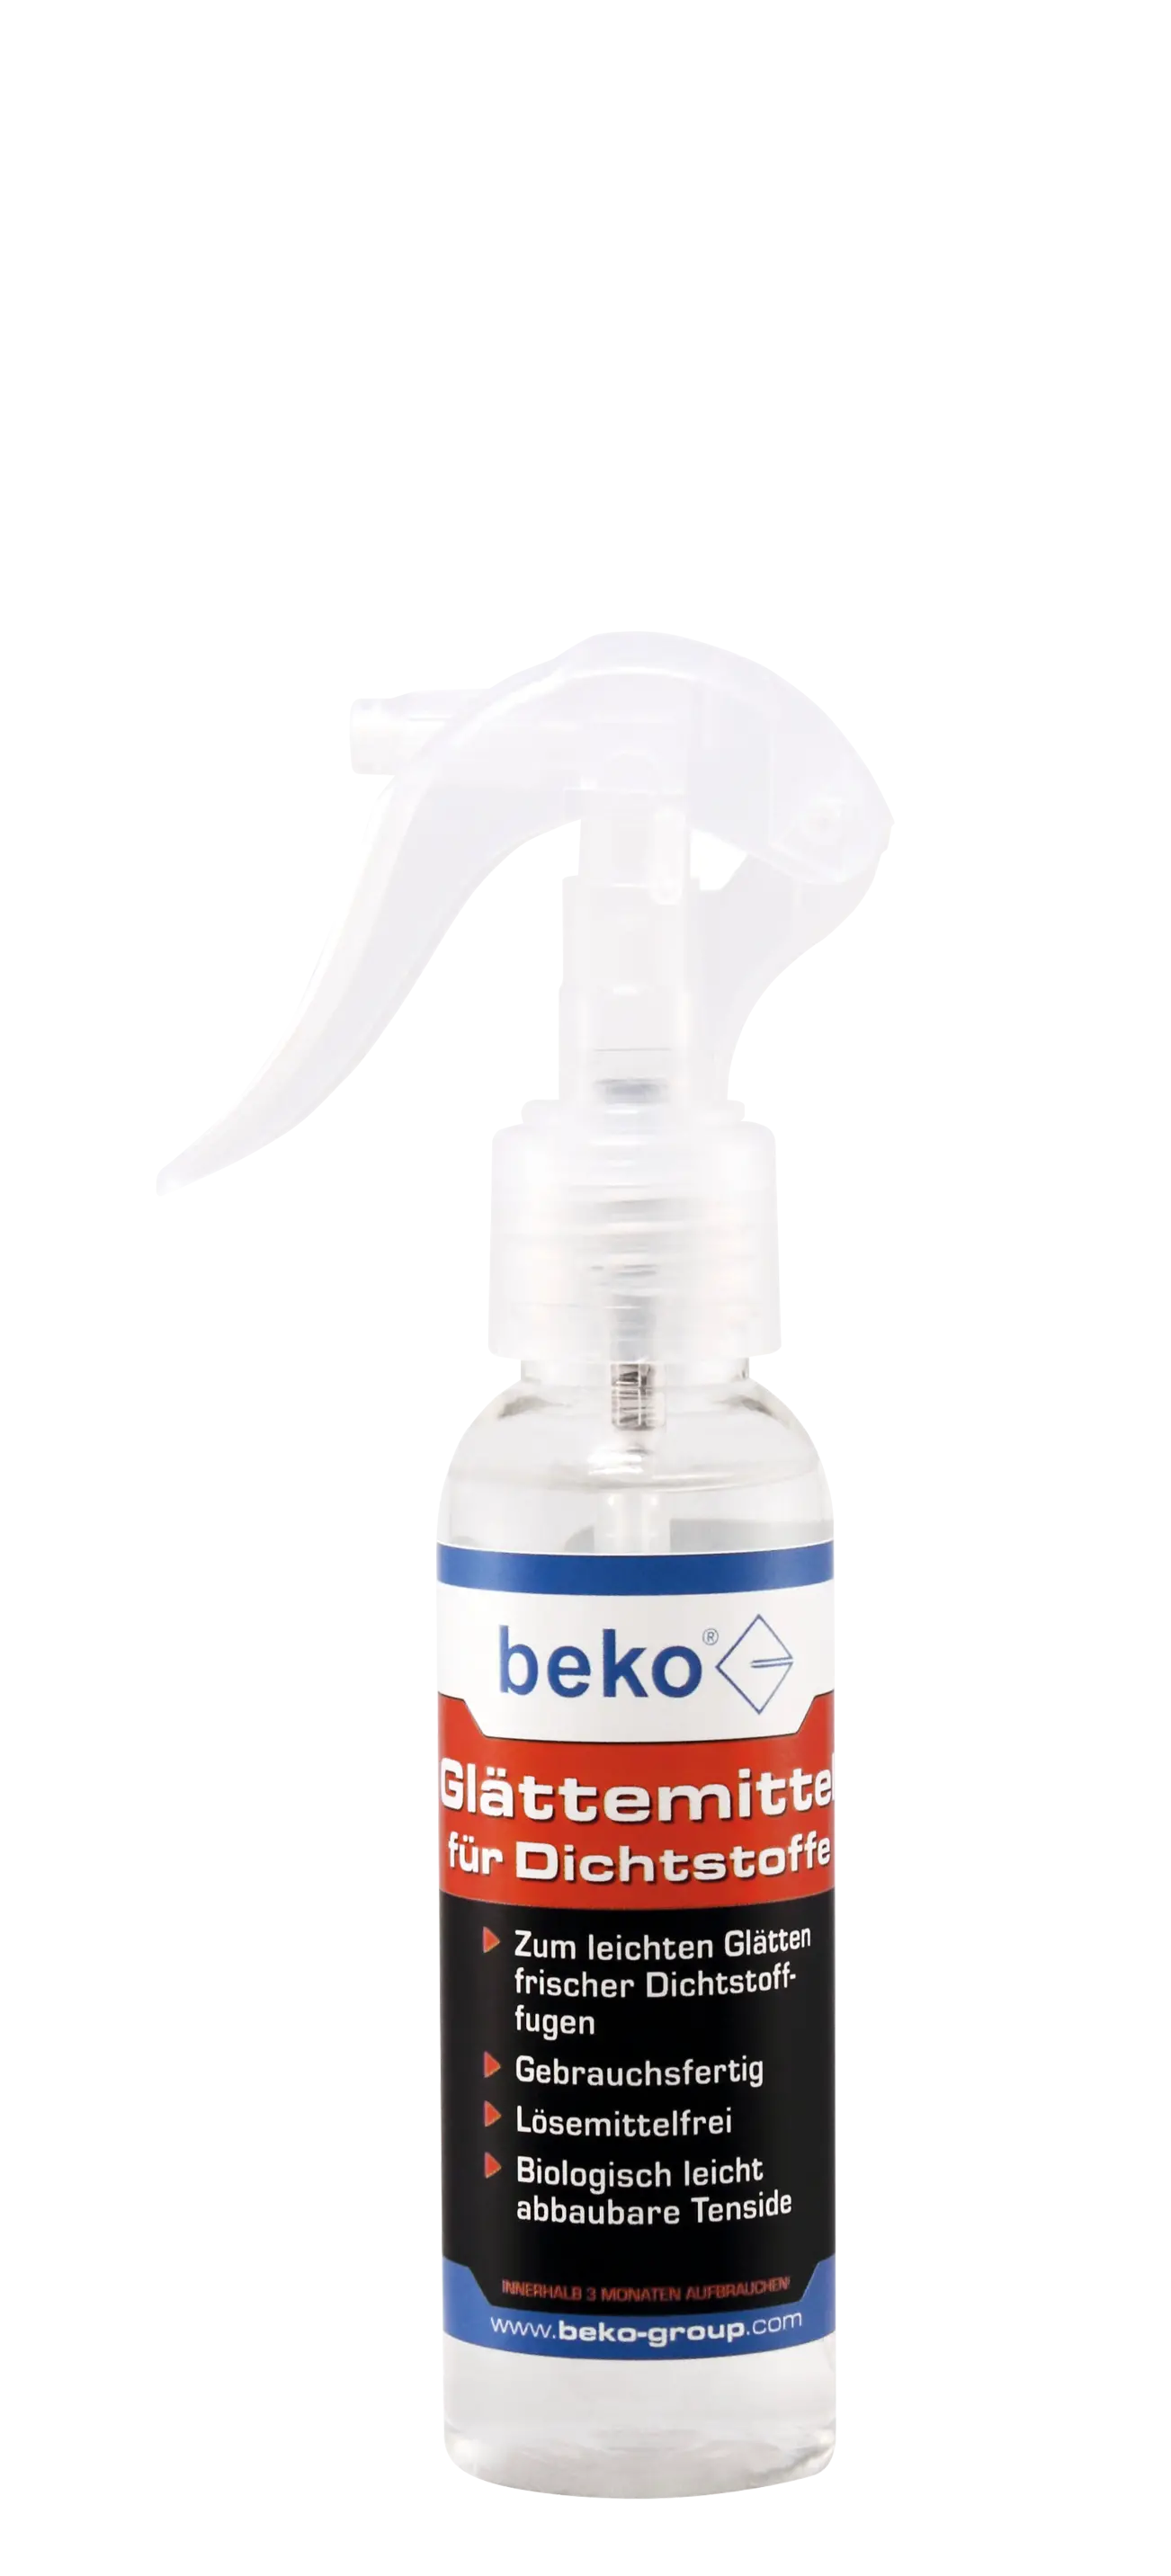 Beko Glättemittel für Dichtstoffe Flasche inkl. Sprühkopf